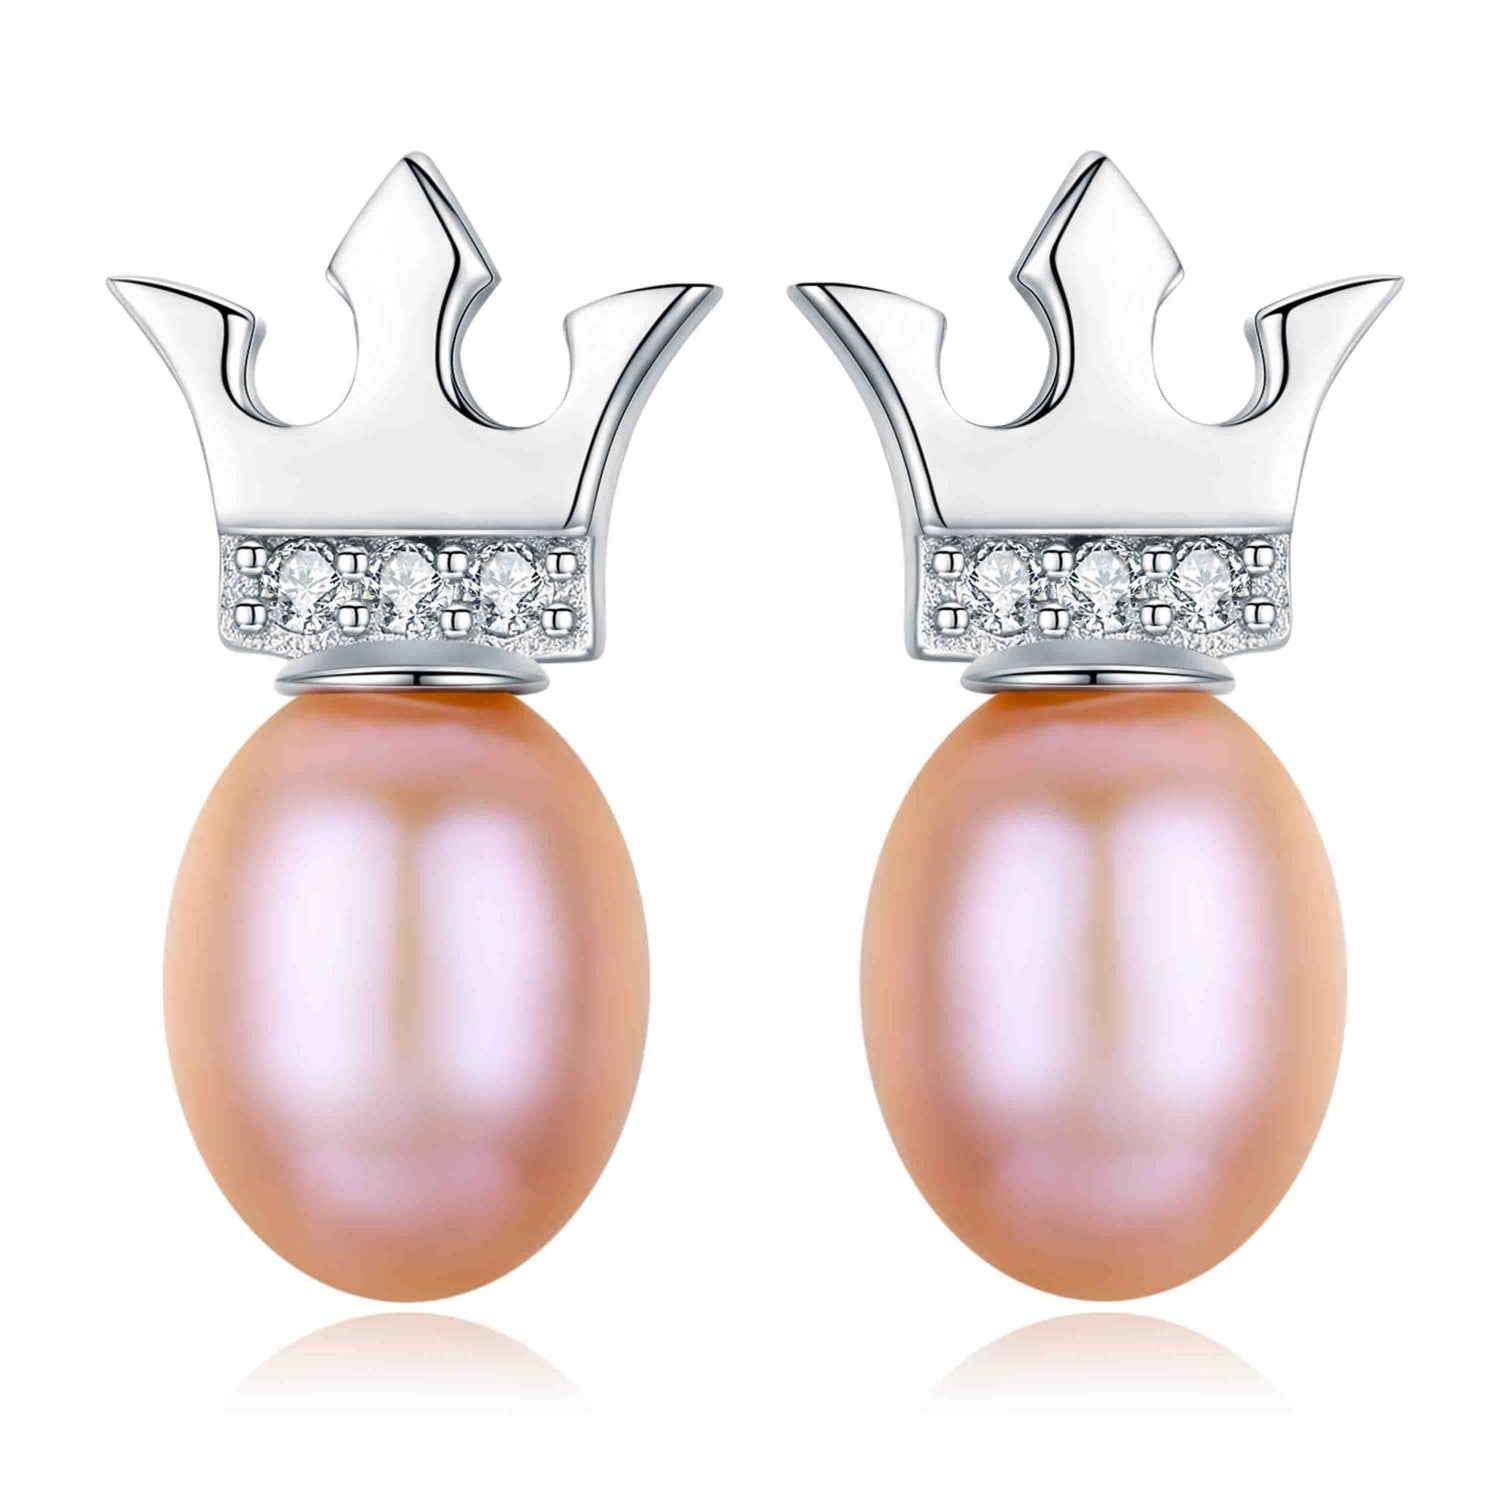 Simple Crown Pearl Earrings - Timeless Pearl